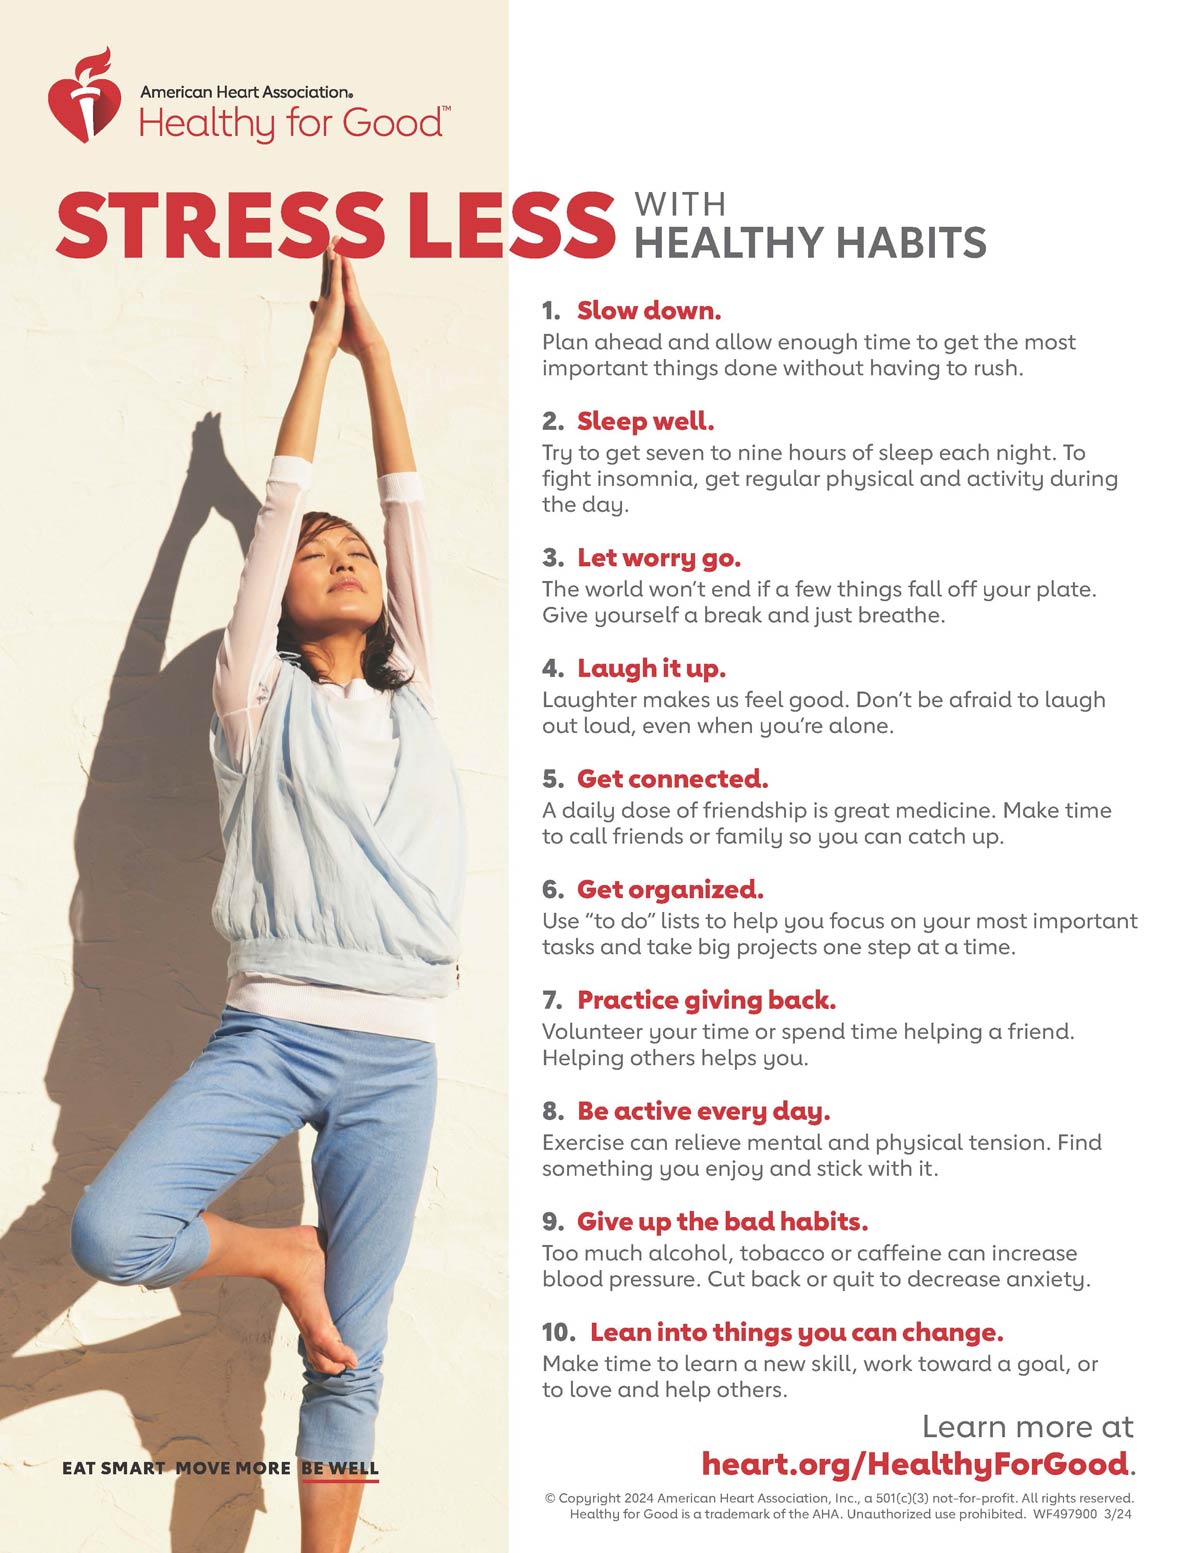 用健康习惯对抗压力信息图